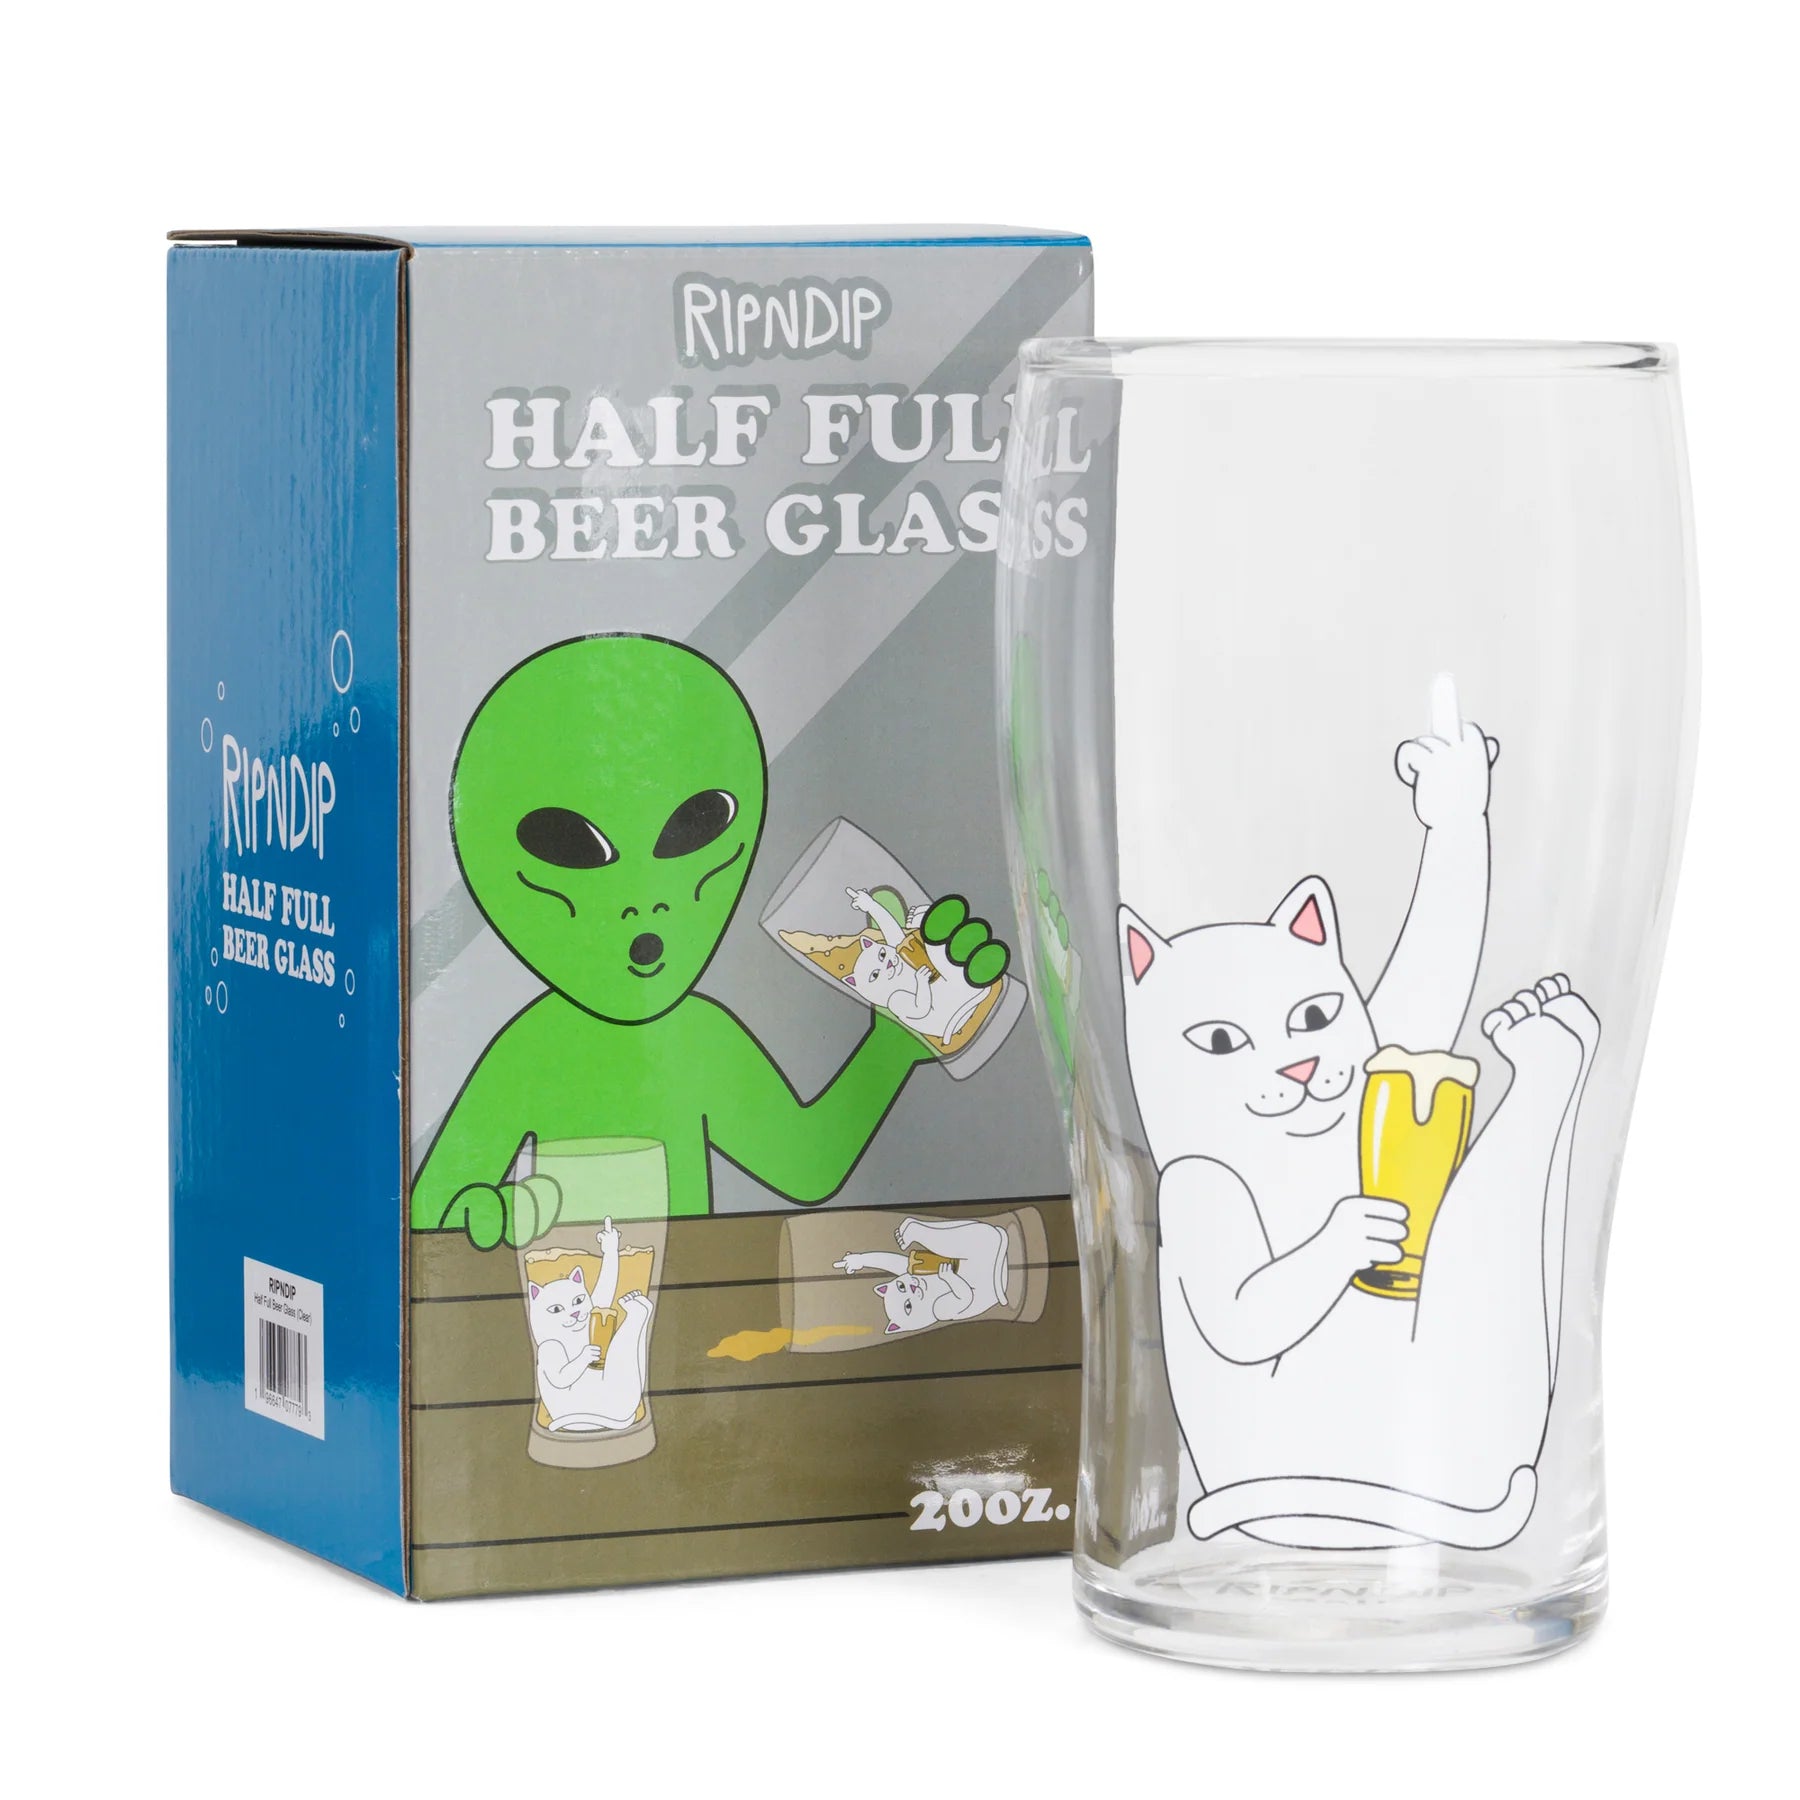 HALF FULL BEER GLASS